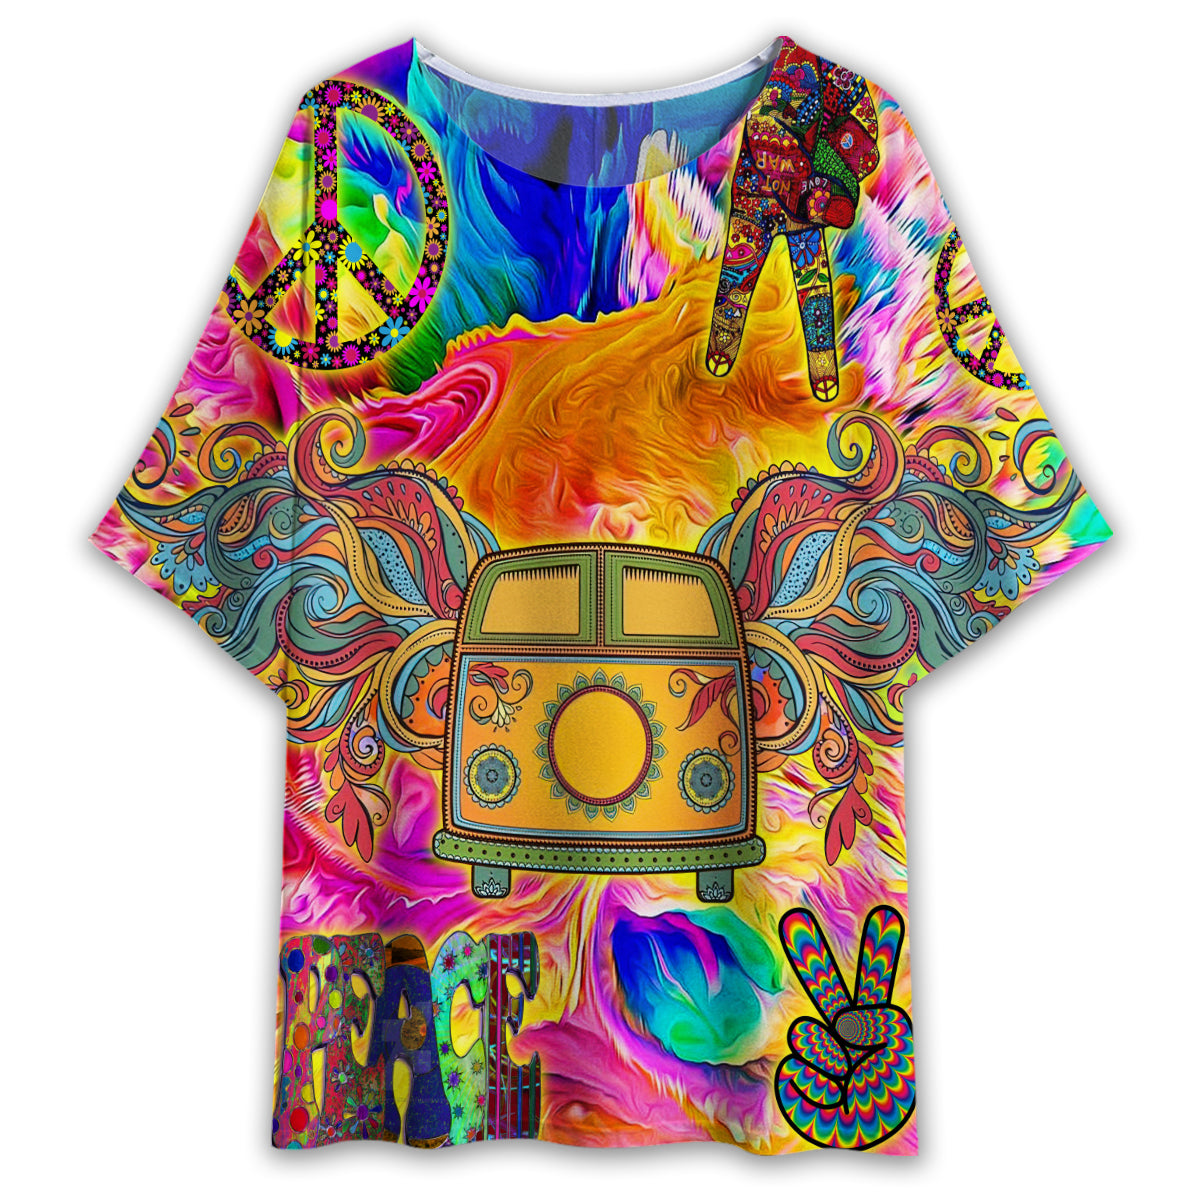 S Hippie Bus Love Life - Women's T-shirt With Bat Sleeve - Owls Matrix LTD